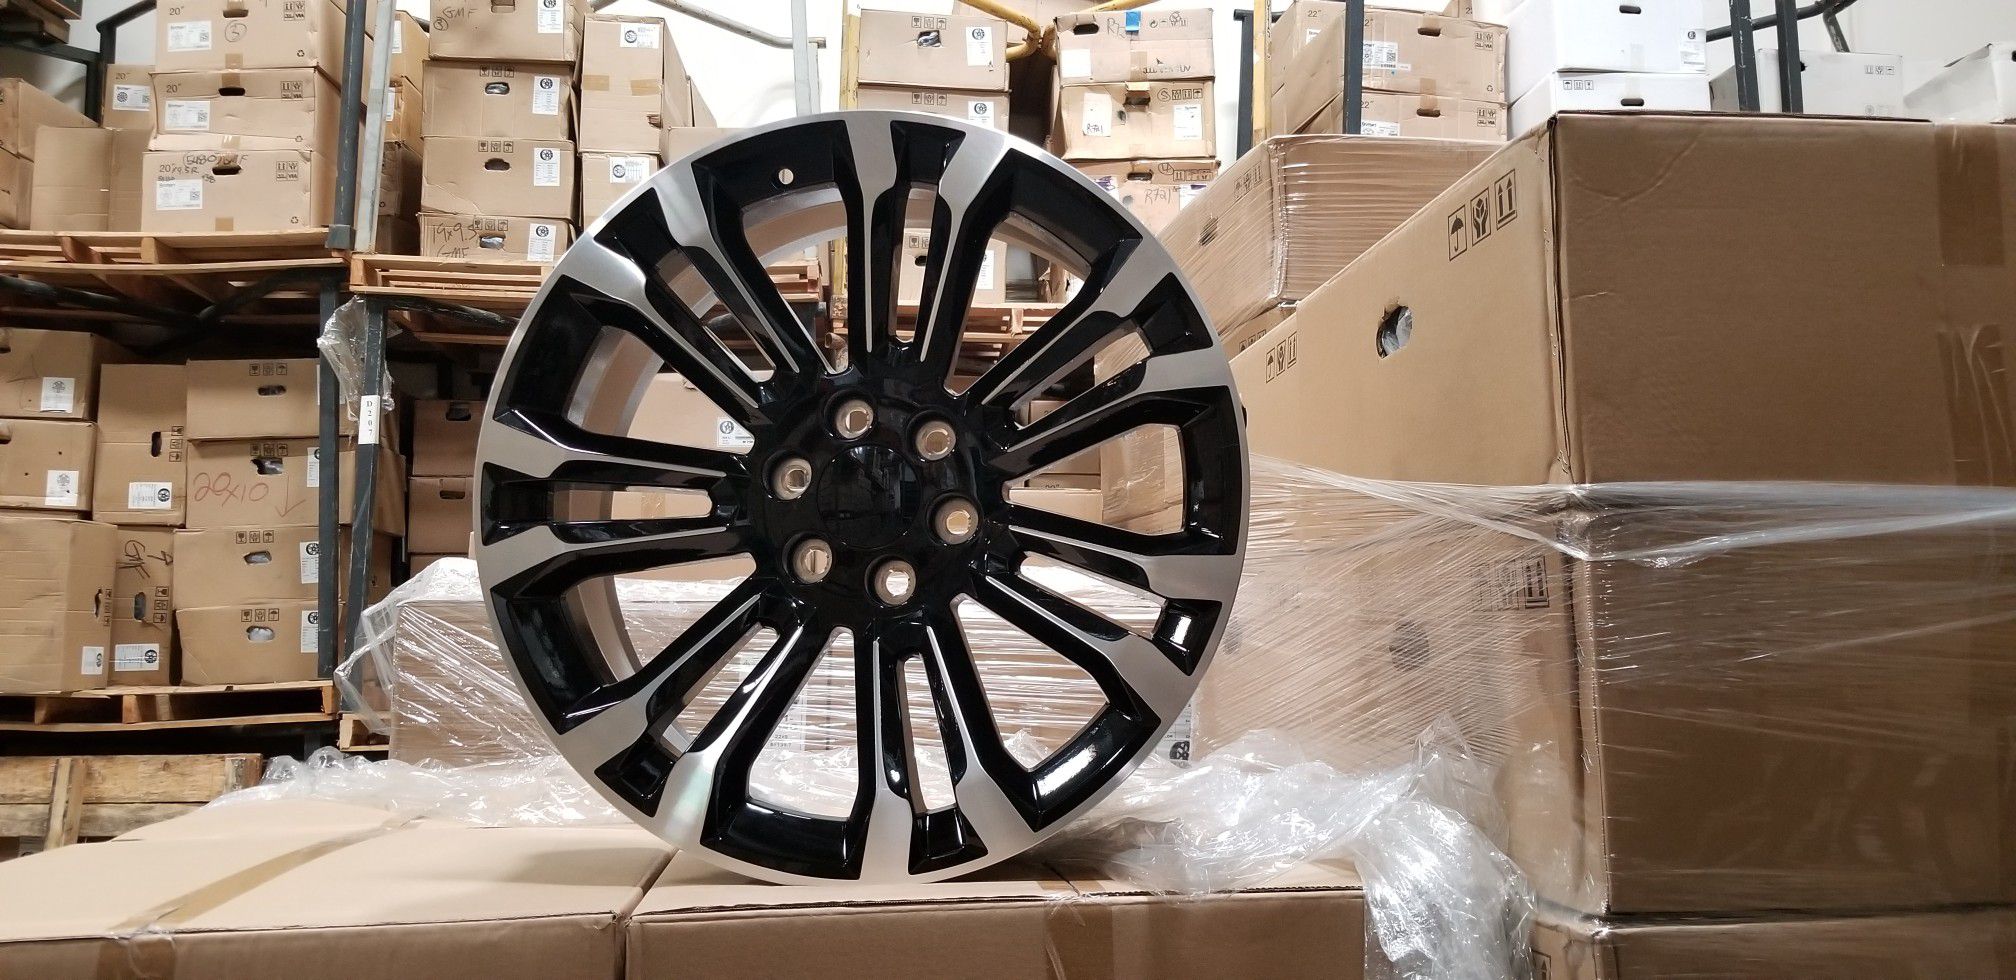 New 22" GMC replica wheels rims G08 black machined Fits Yukon Silverado Tahoe